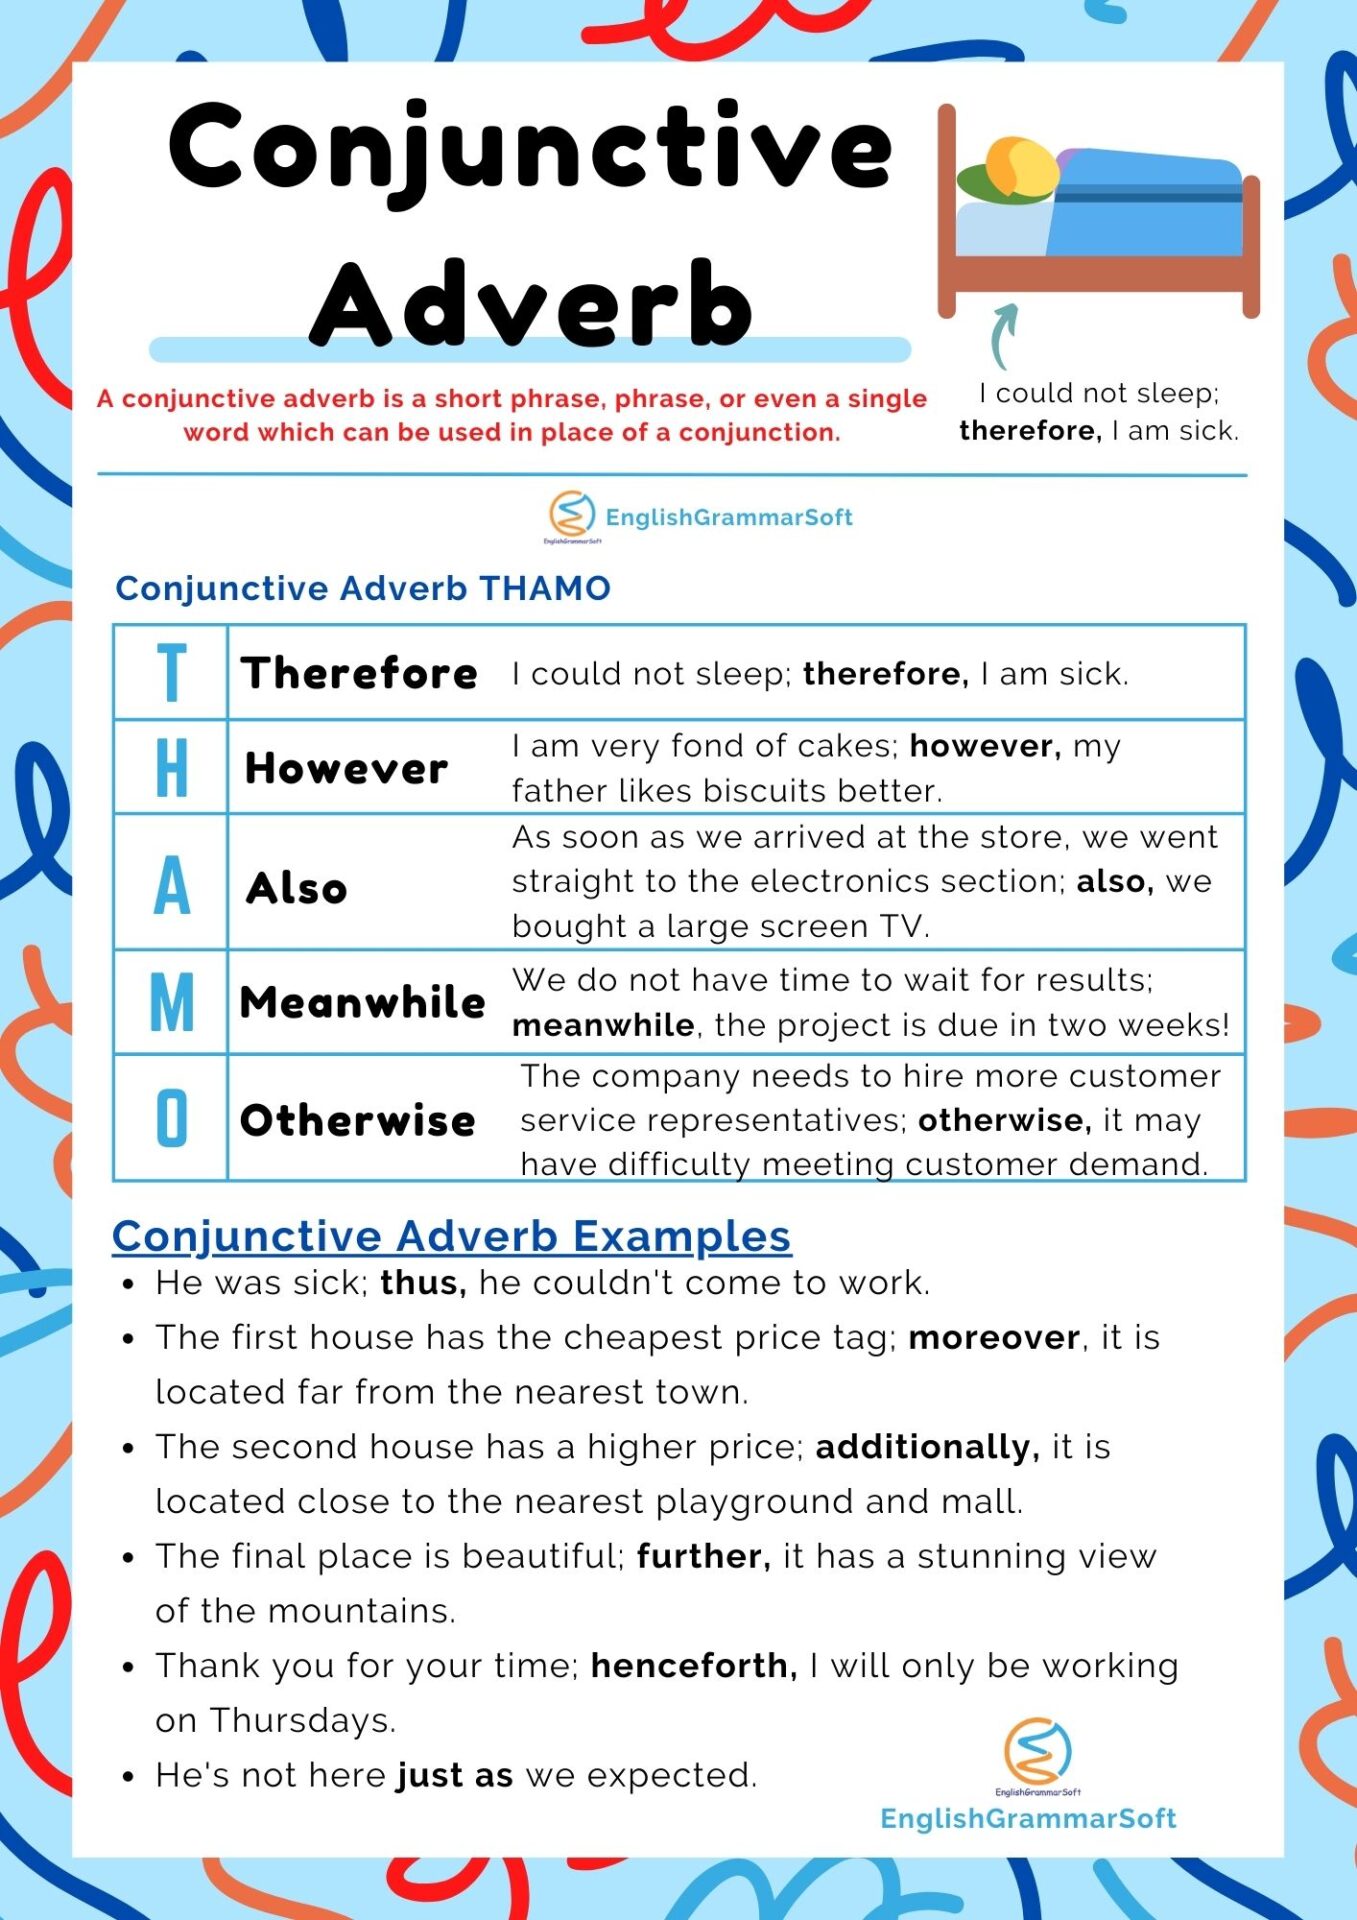 Conjunctive Adverb Thamo